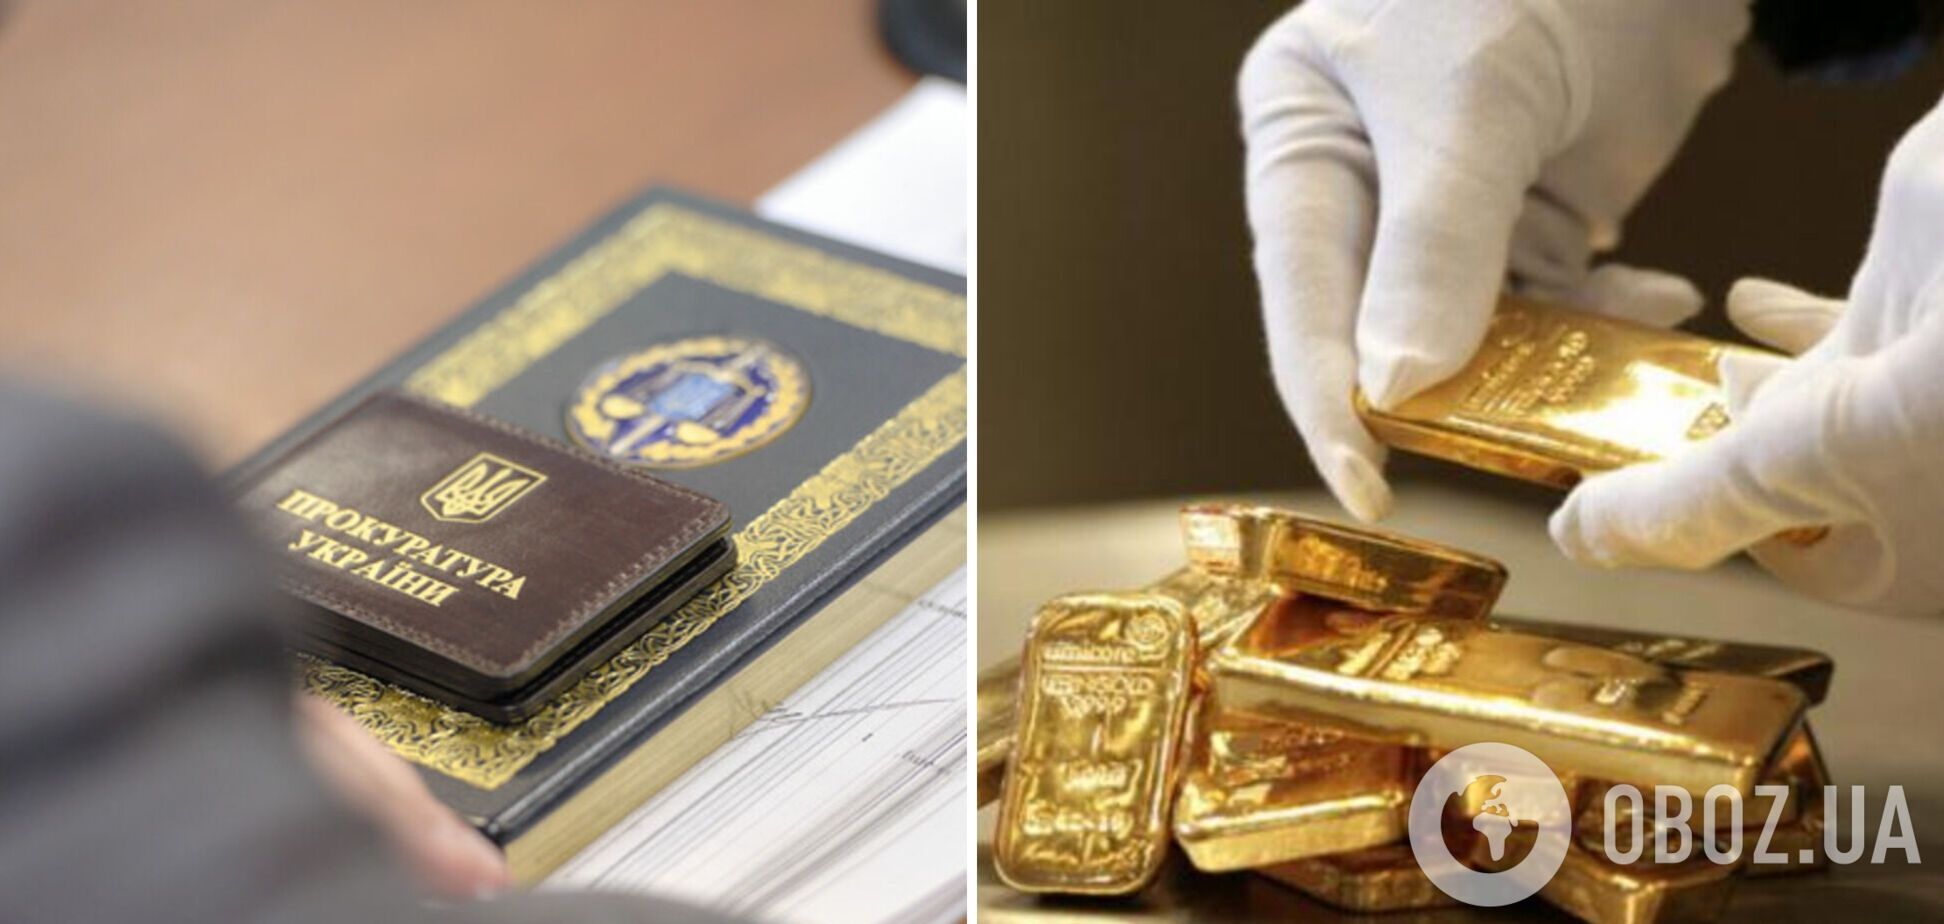 У Києві експрокурор привласнив 8 кг золота, виявленого під час обшуку: йому вже повідомили про підозру